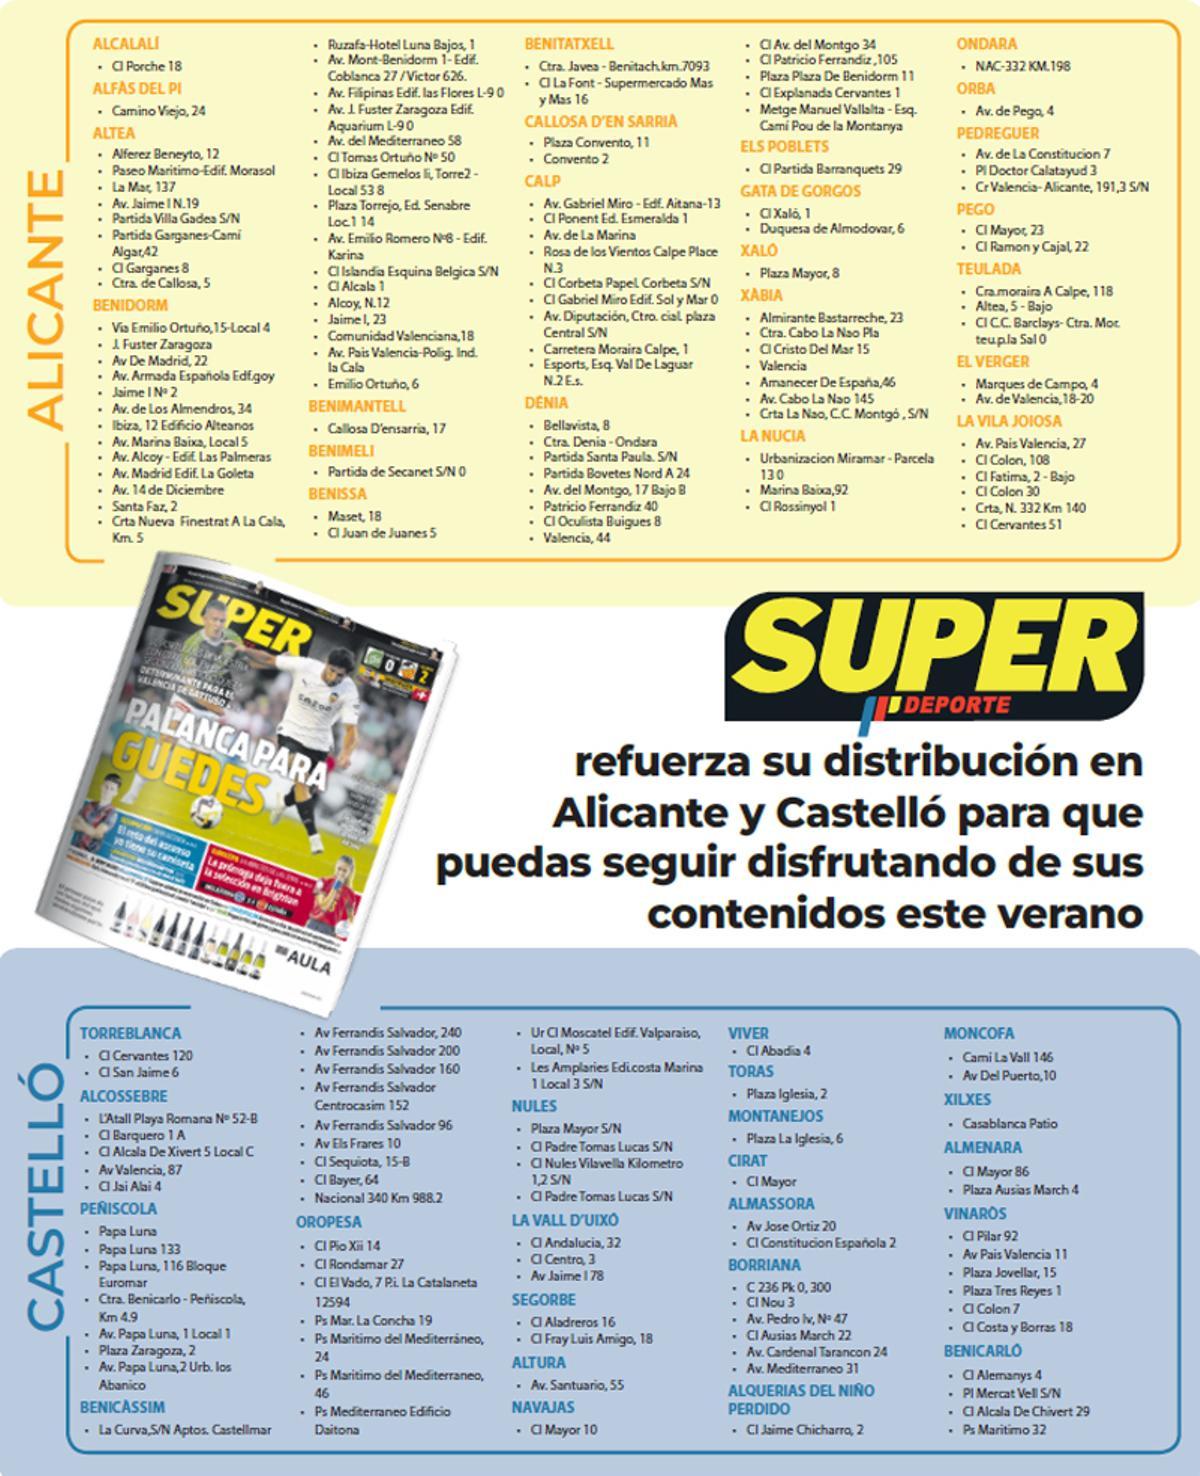 Lista de kioscos de Alicante y Castelló